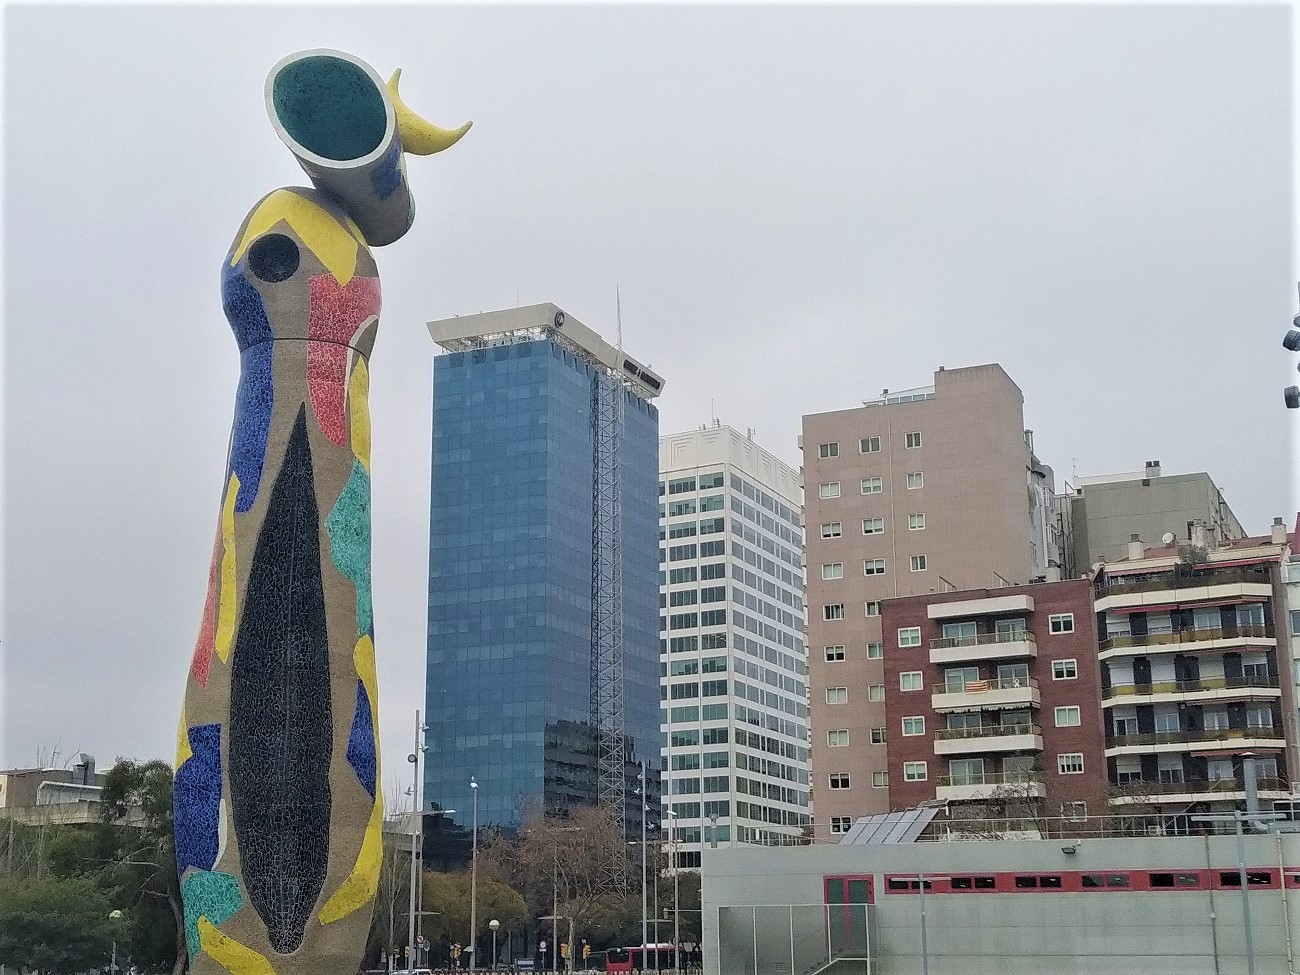 Vista de la obra de Joan Miró "Dona i Ocell", situado en el parc Joan Miró, junto al carrer Tarragona